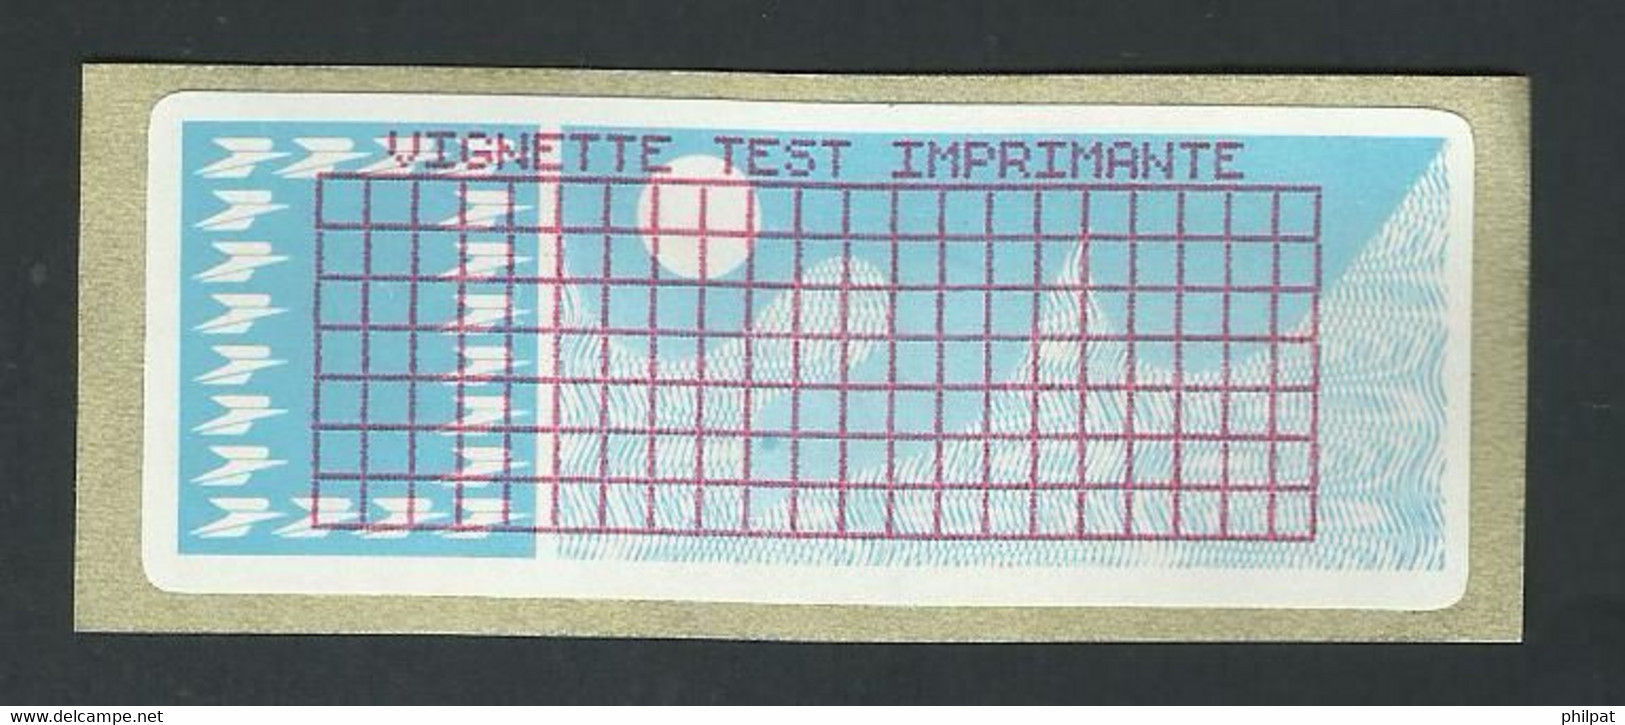 VIGNETTE TEST IMPRIMANTE - 1985 Papier « Carrier »